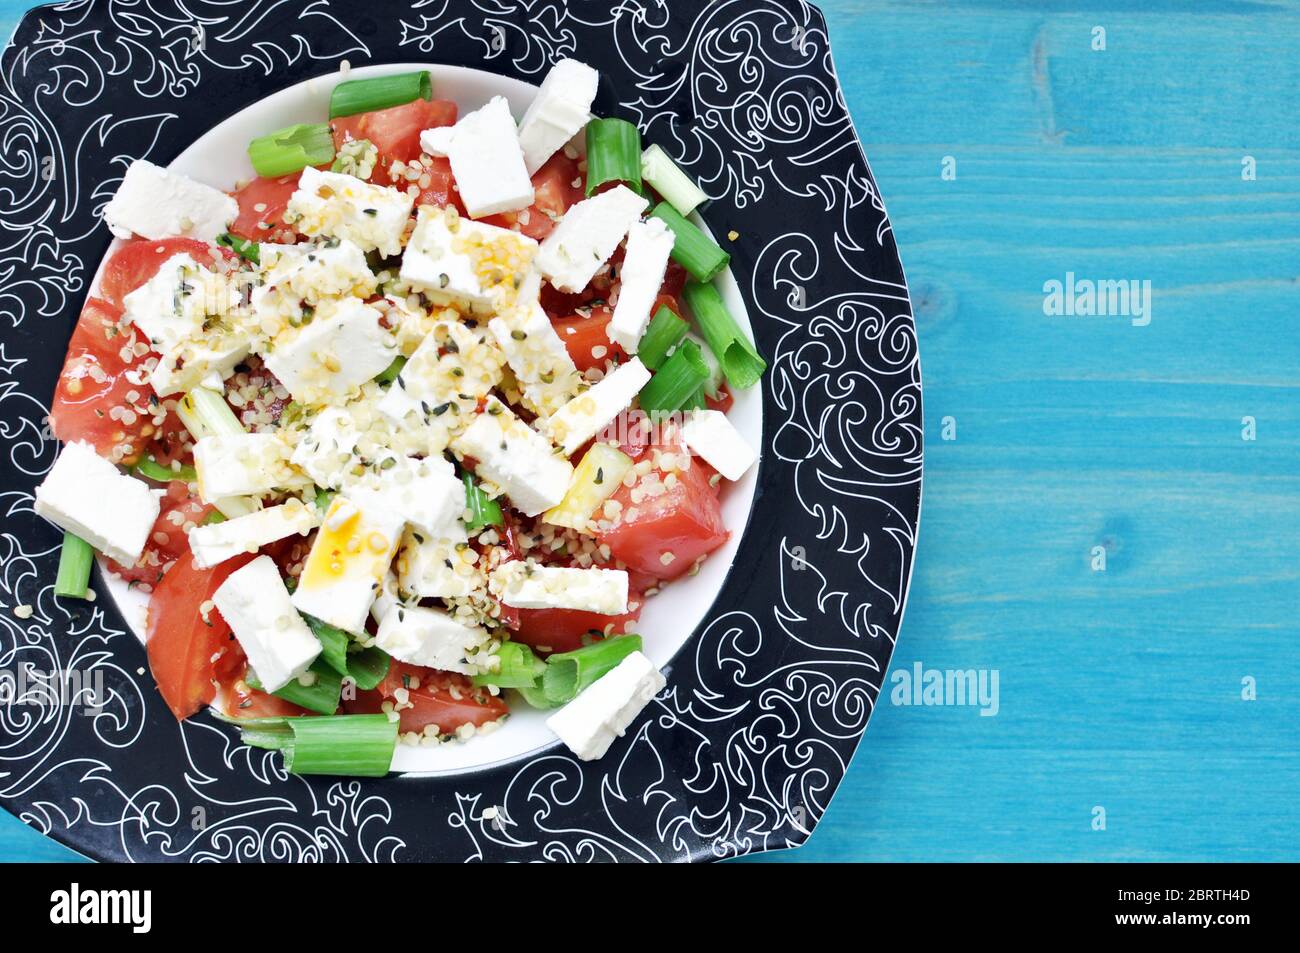 Sur une assiette noire sur fond bleu, garnir de tomates et de salade d'oignons verts avec du fromage et du chanvre. Copier le texte d'espace. Banque D'Images